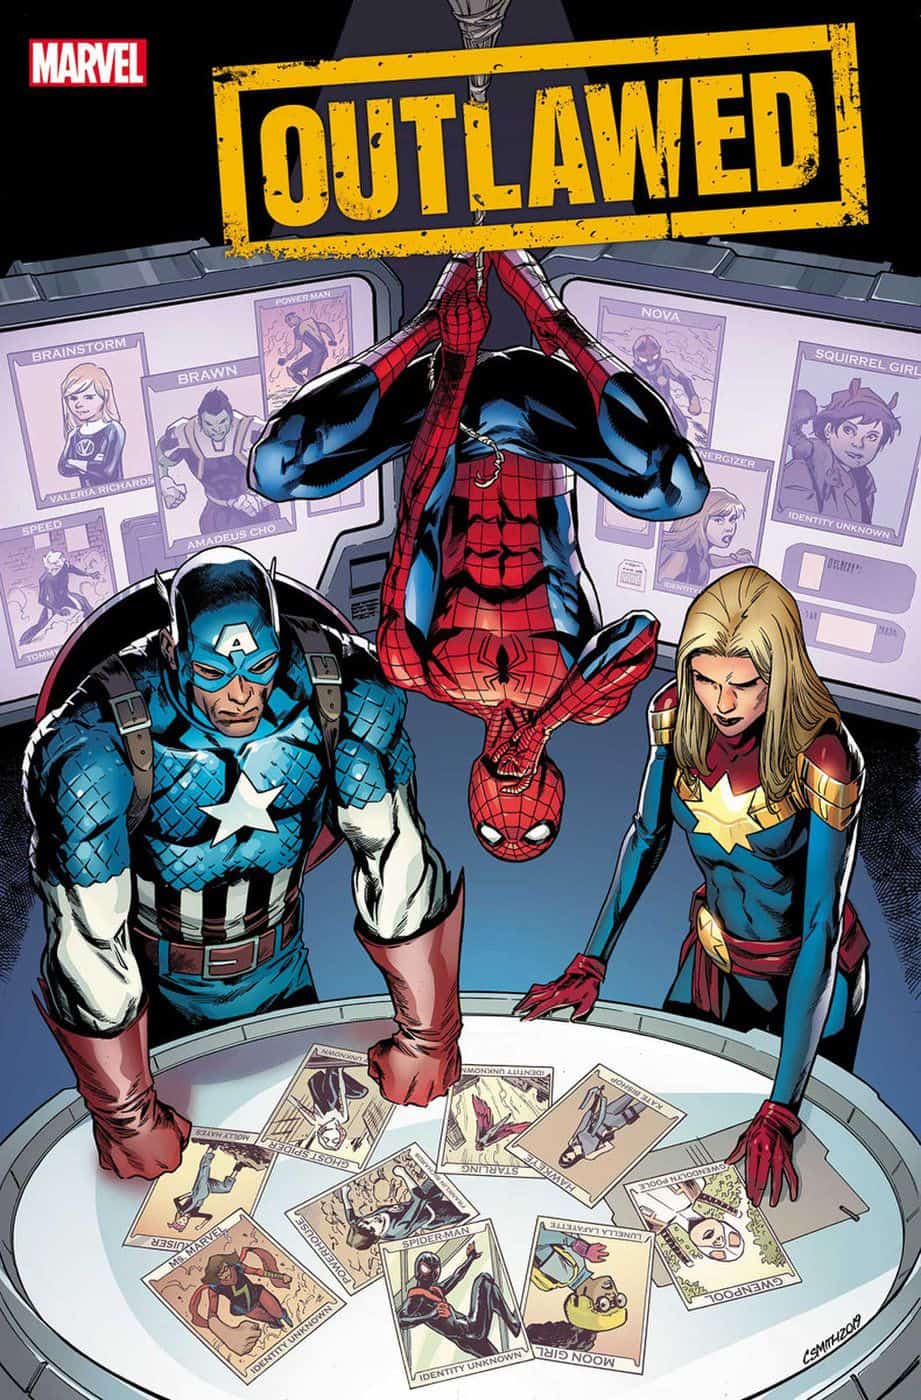 Marvel Comics INCOMING #1 2019